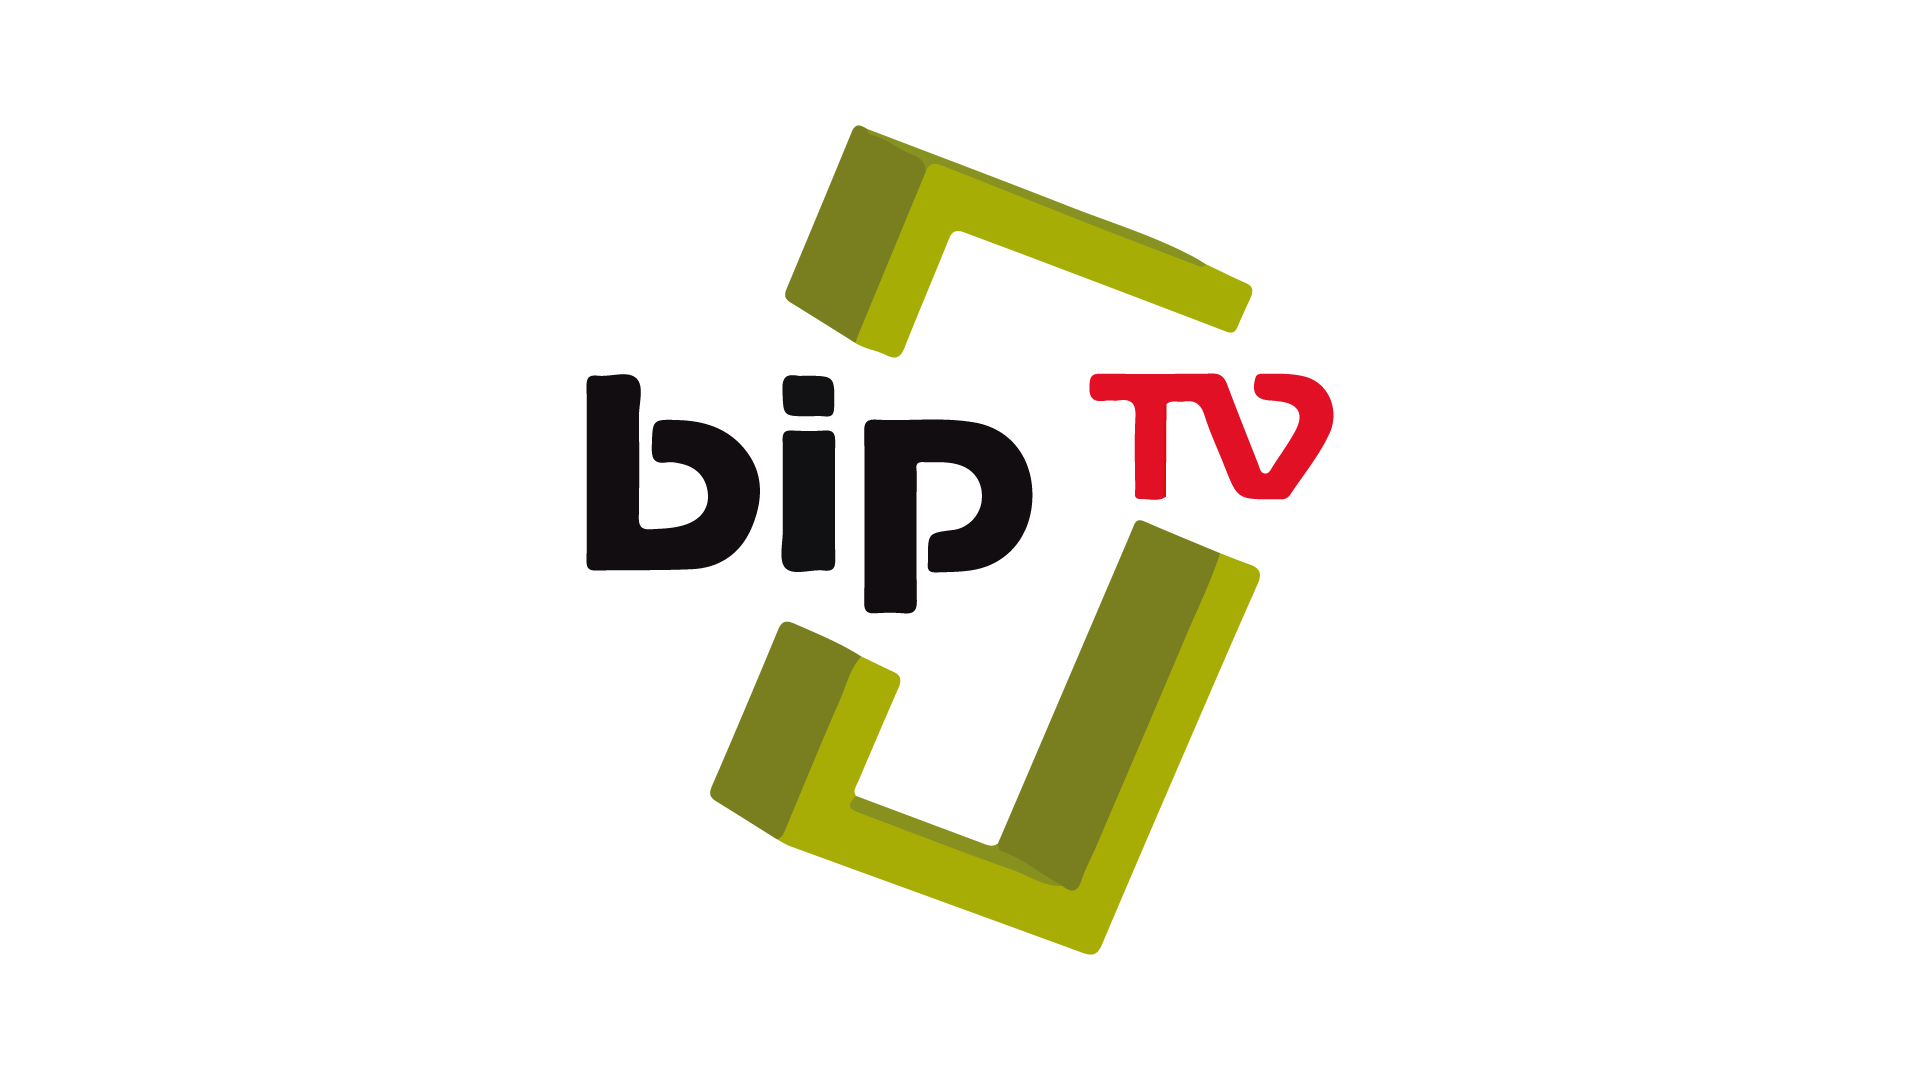 Bip-TV-en-direct